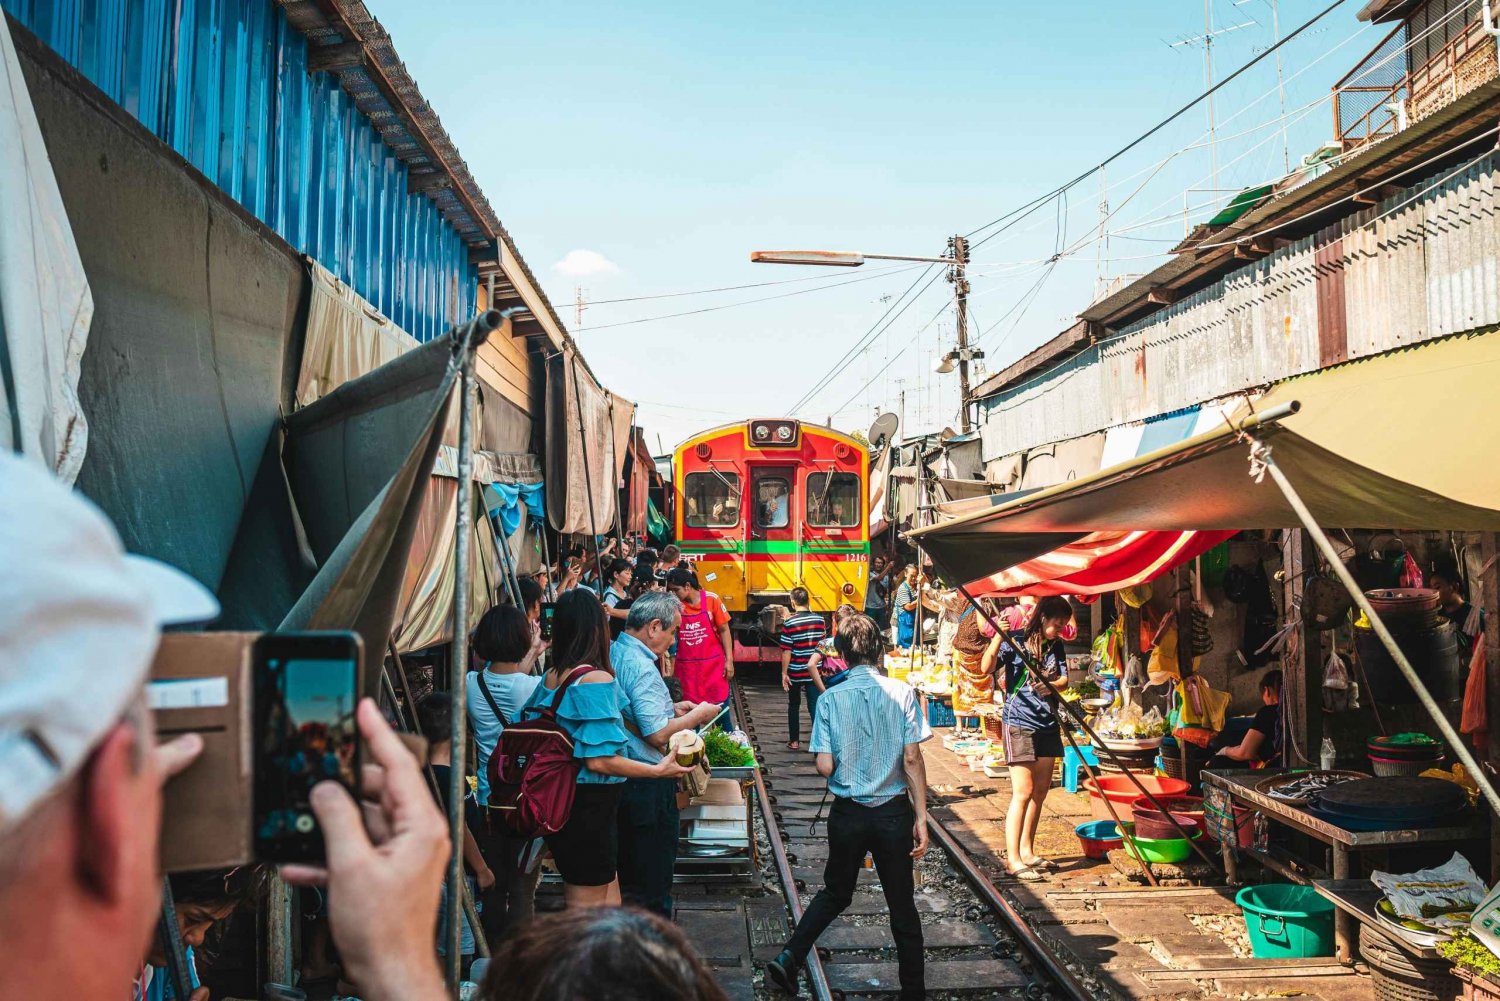 Bangkok: Maeklong Train Market & Damnoen Saduak Market Tour